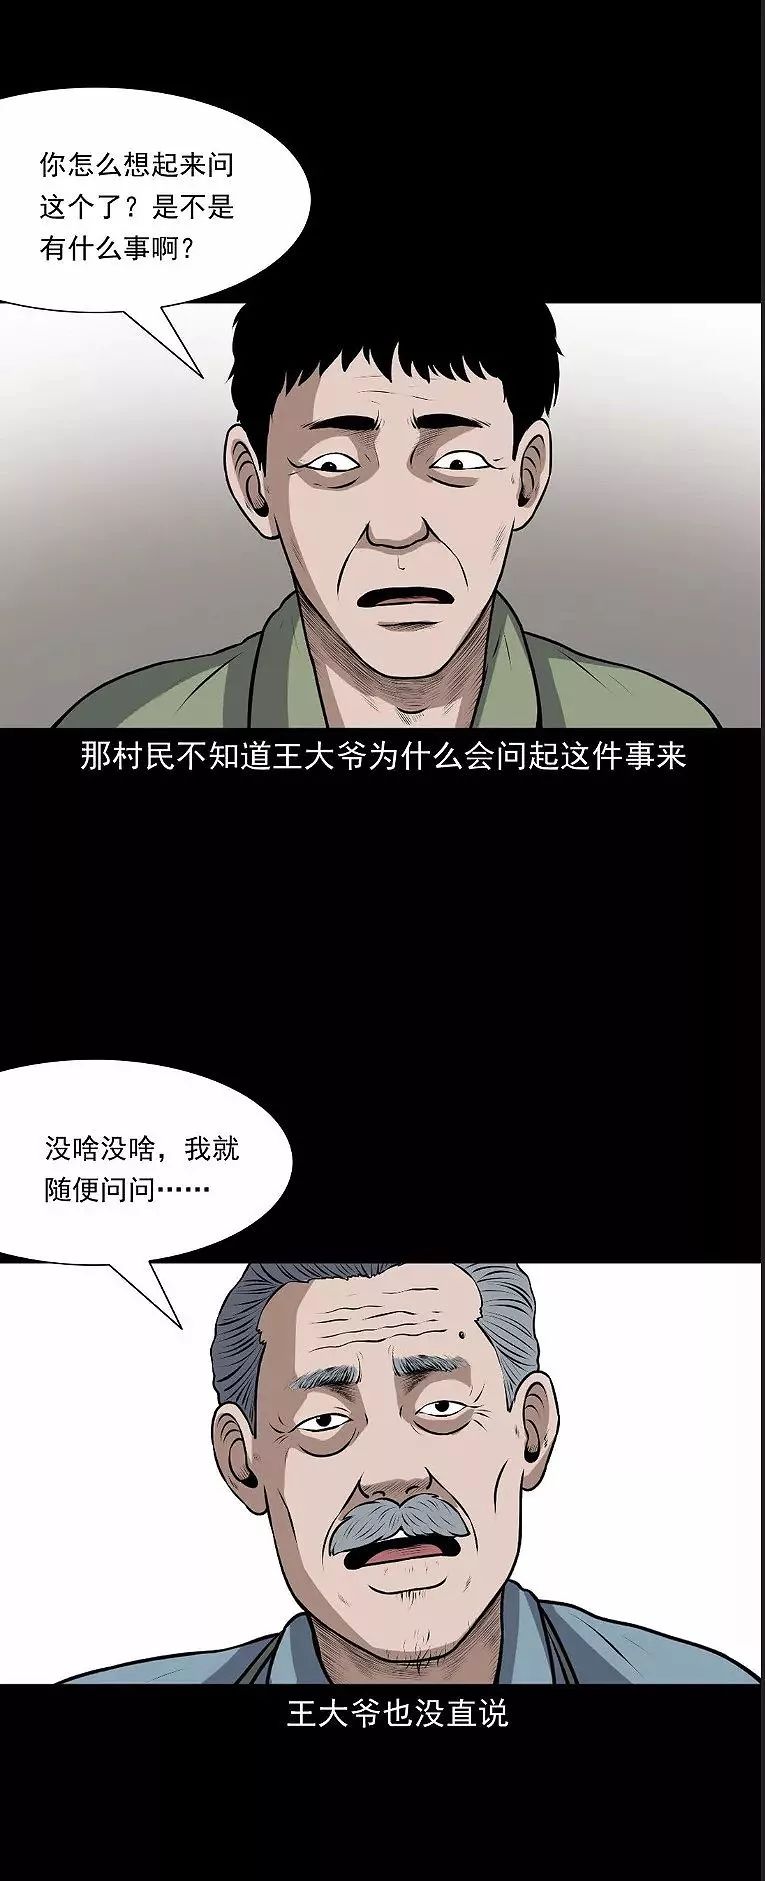 中国真实民间怪谈漫画《王大爷的故事》,鬼上车